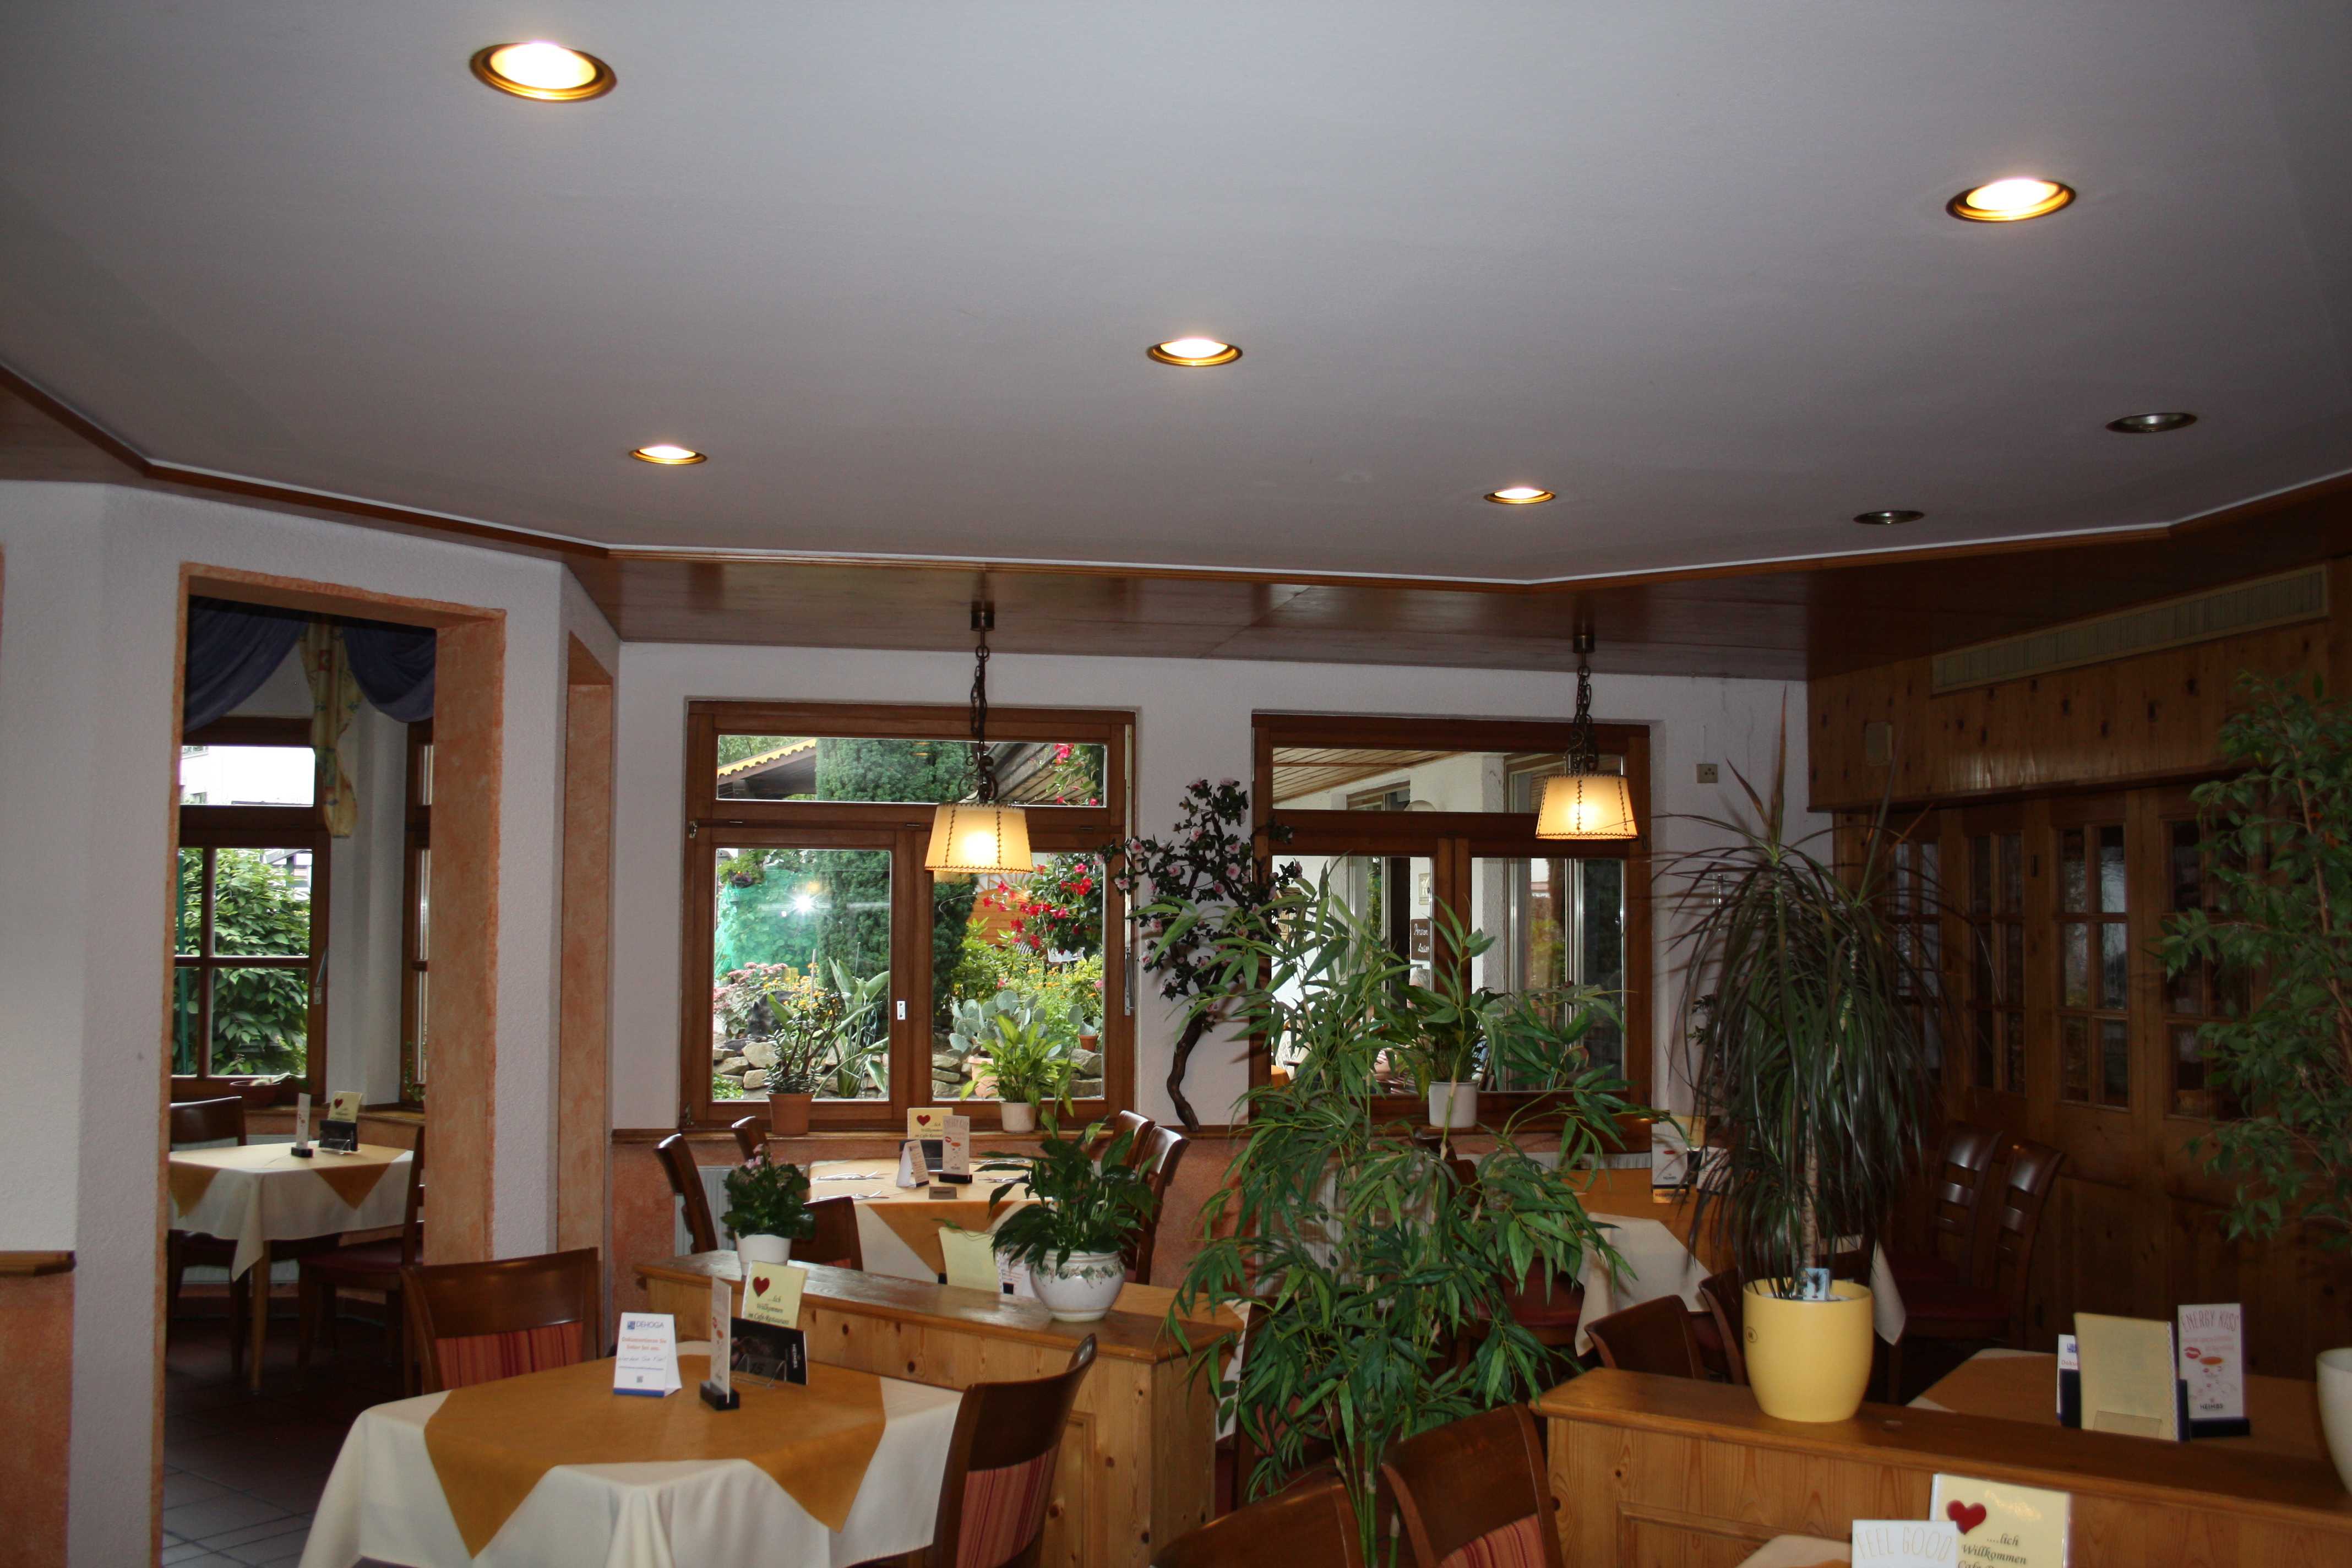 Restaurant-Cafebereich in der Pension Lauer, Bad Soden-Salmünster. 
